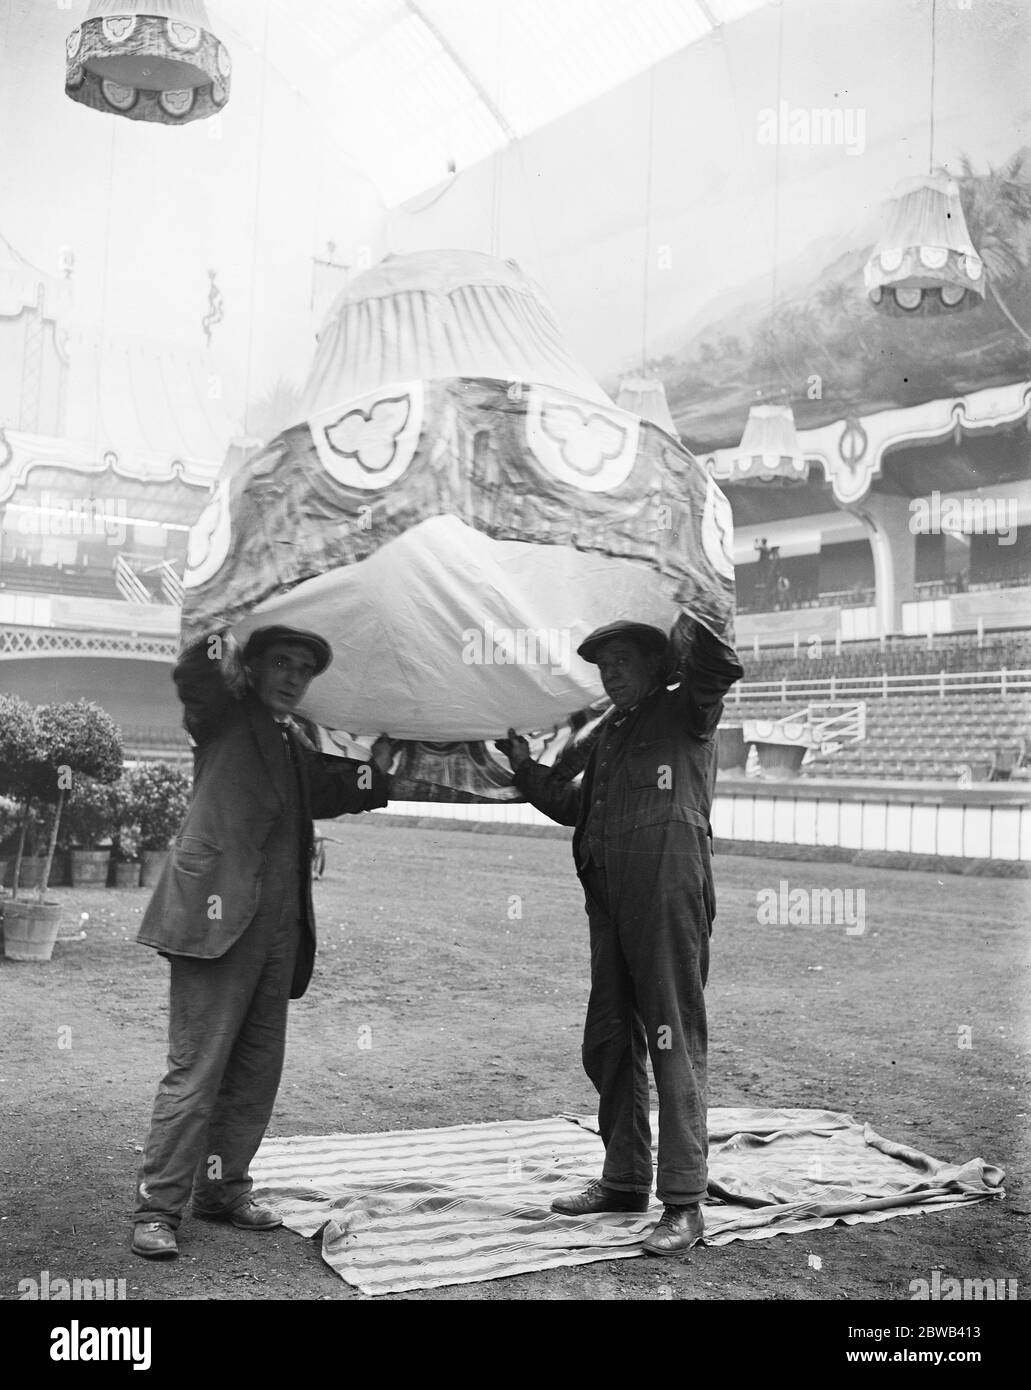 Kein Ascot Hut. Vorbereitung auf die Internationale Pferdeschau in Olympia zwei Arbeiter, die sich mit den Dekorationen beschäftigen, werden hier gesehen, wie sie einen der riesigen Lampenschirme am 20. Juni 1923 über ihren Köpfen halten Stockfoto